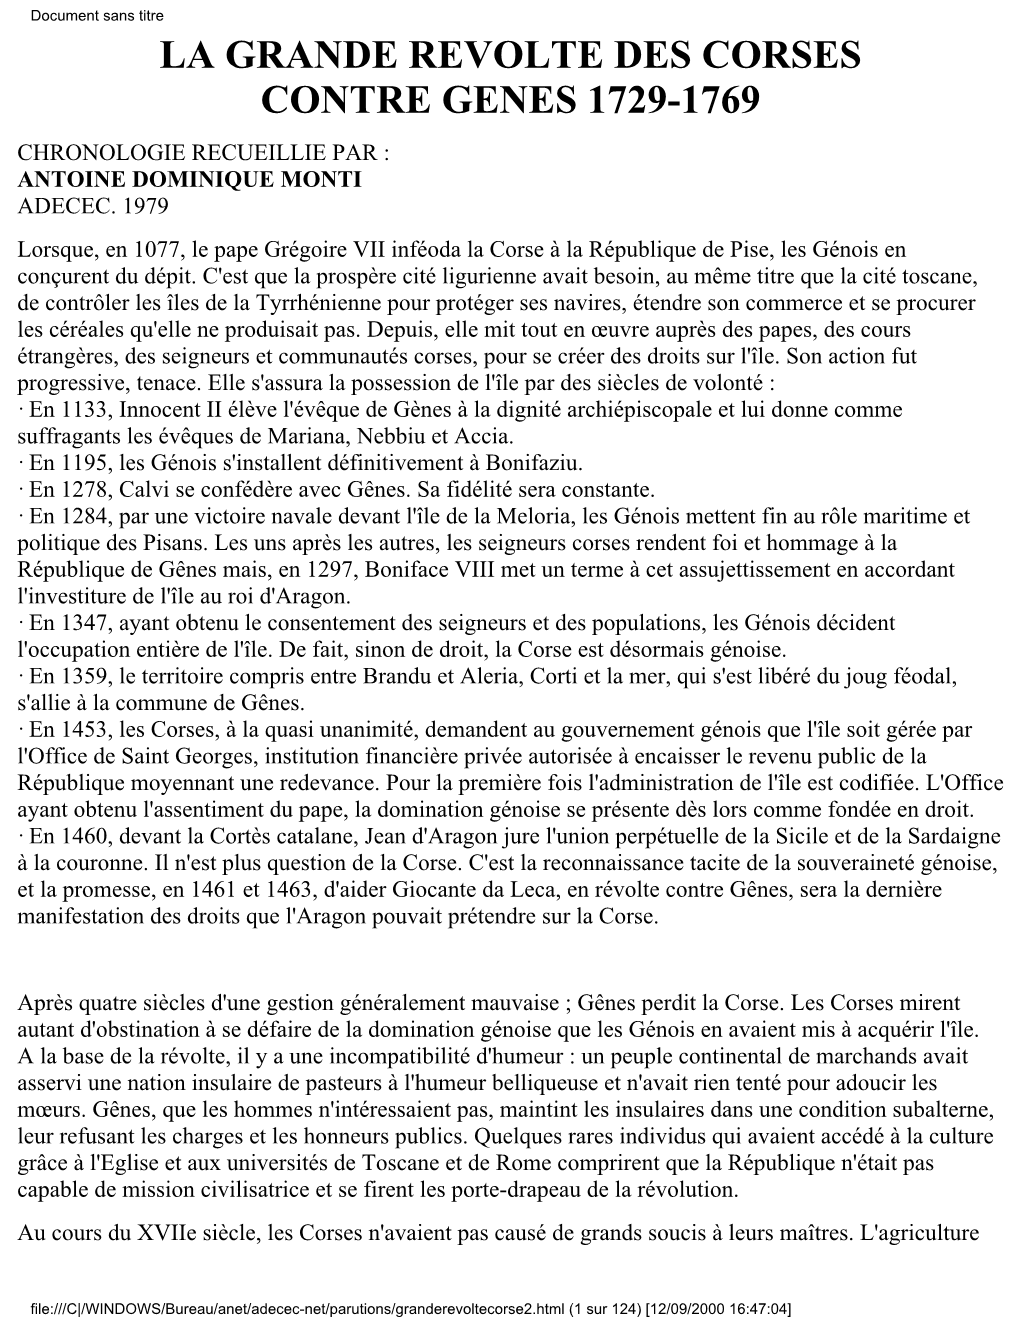 Document Sans Titre LA GRANDE REVOLTE DES CORSES CONTRE GENES 1729-1769 CHRONOLOGIE RECUEILLIE PAR : ANTOINE DOMINIQUE MONTI ADECEC